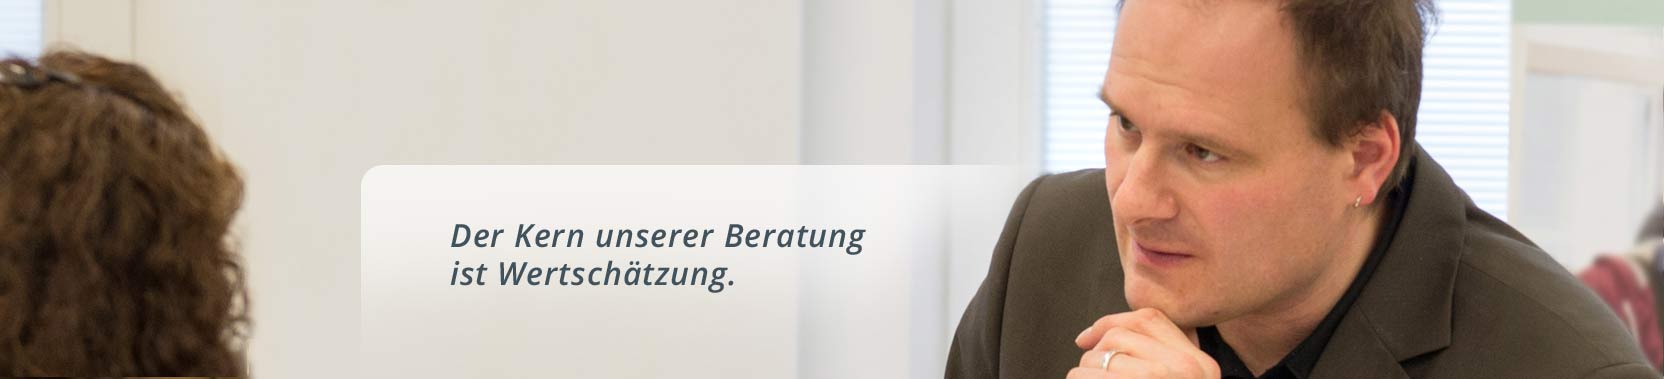 Jan Jerzewski von der Anerkennungsberatung Bremen hilft Migrant:innen weiter in ihrem erlenten Beruf arbeiten zu können.